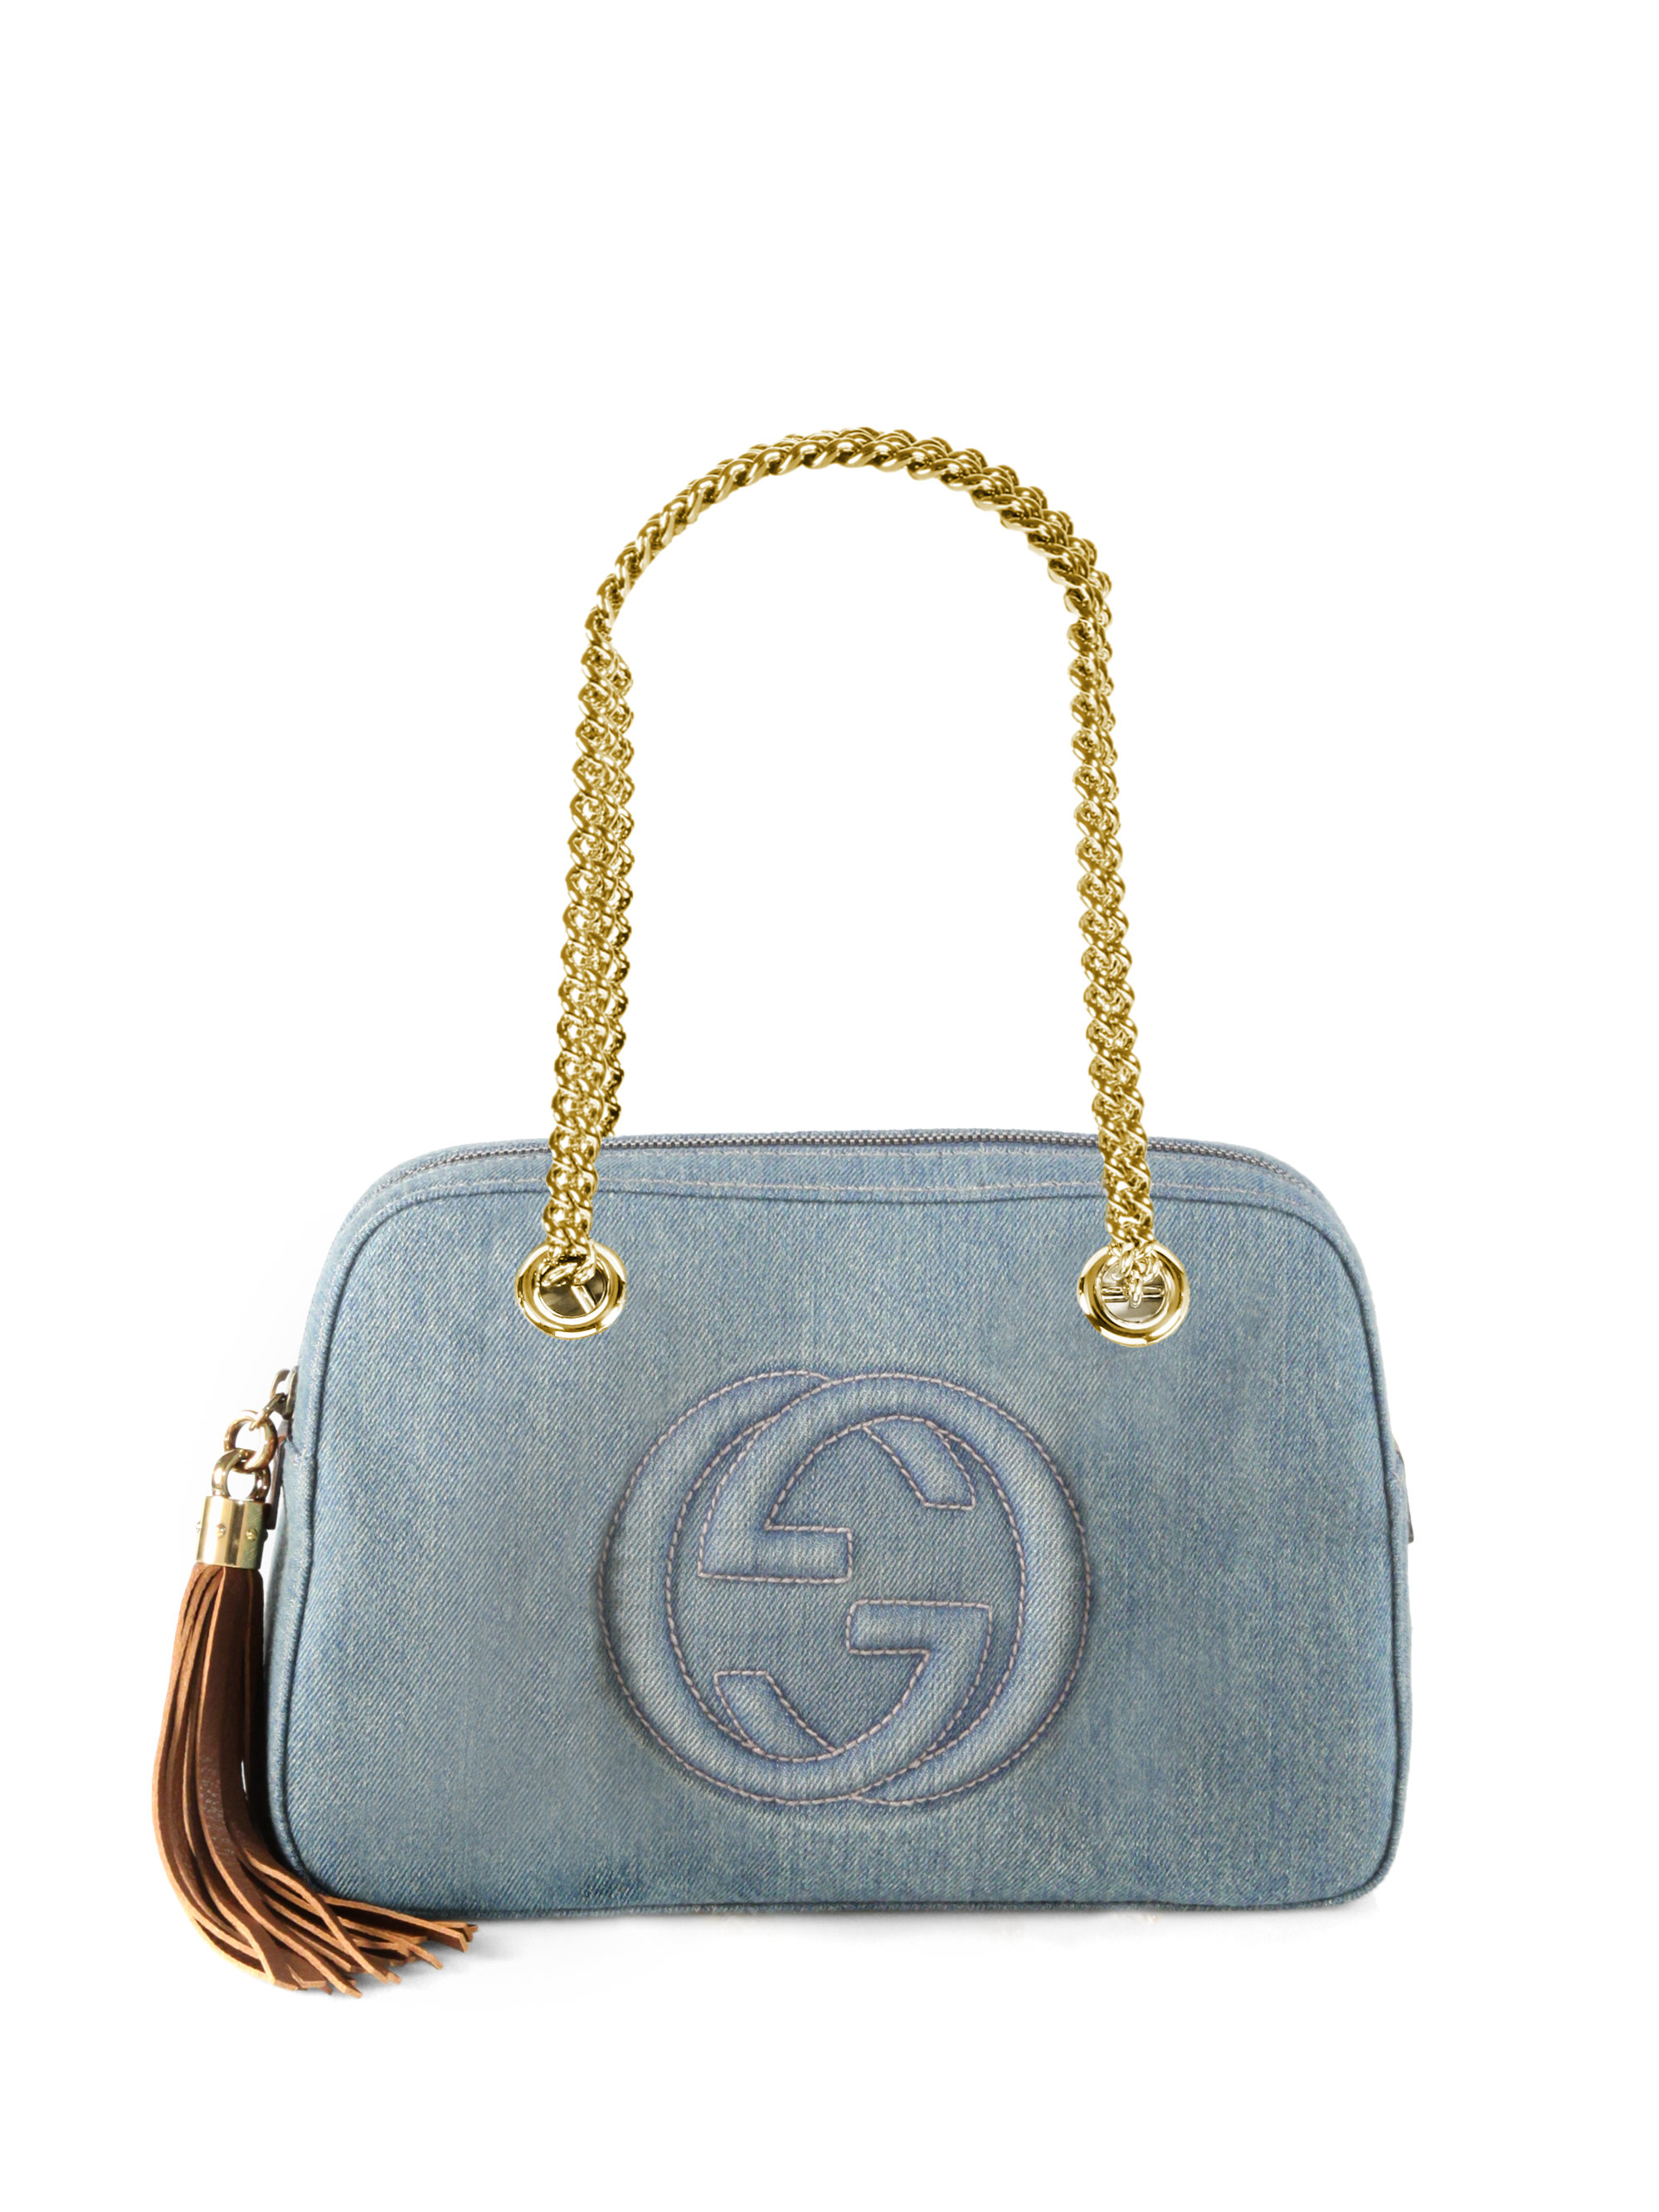 Lyst - Gucci Soho Blue Denim Shoulder Bag in Blue